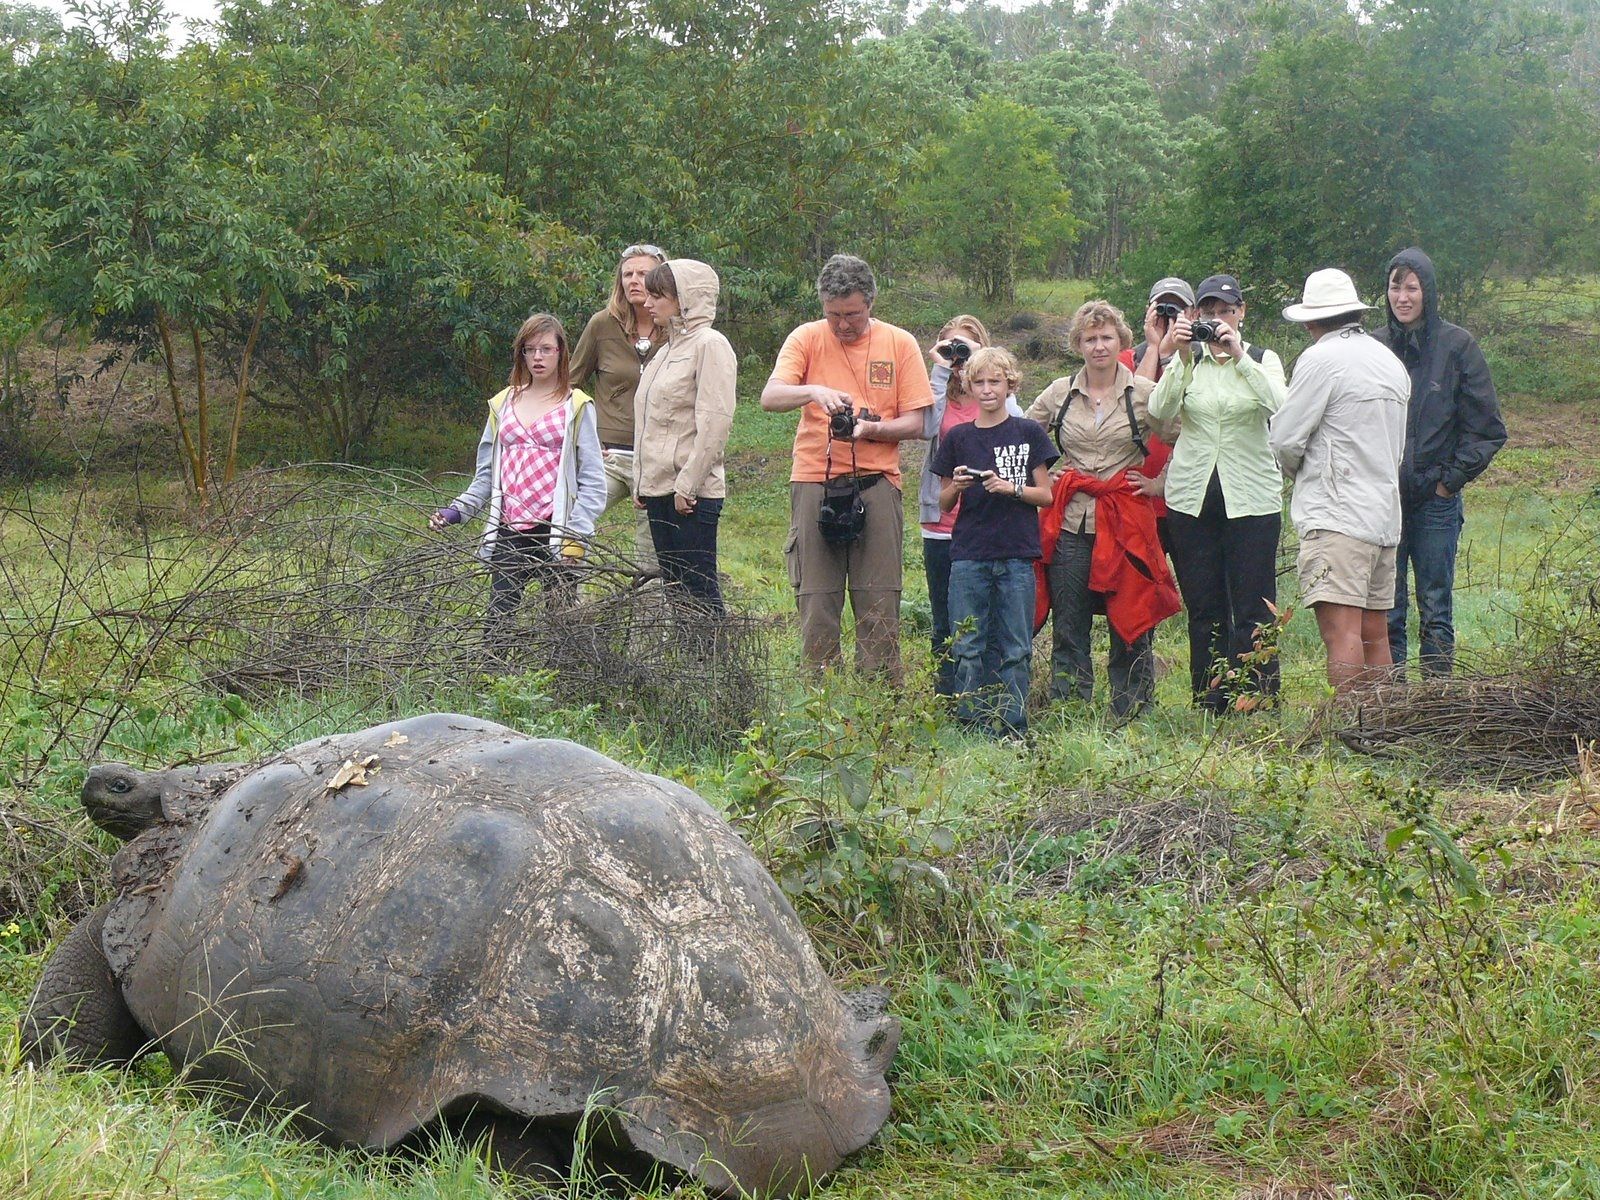 10 years tour operator For Family Reisen - Ecuador & Galápagos Familienreise - Giant tortoise in Galápagos